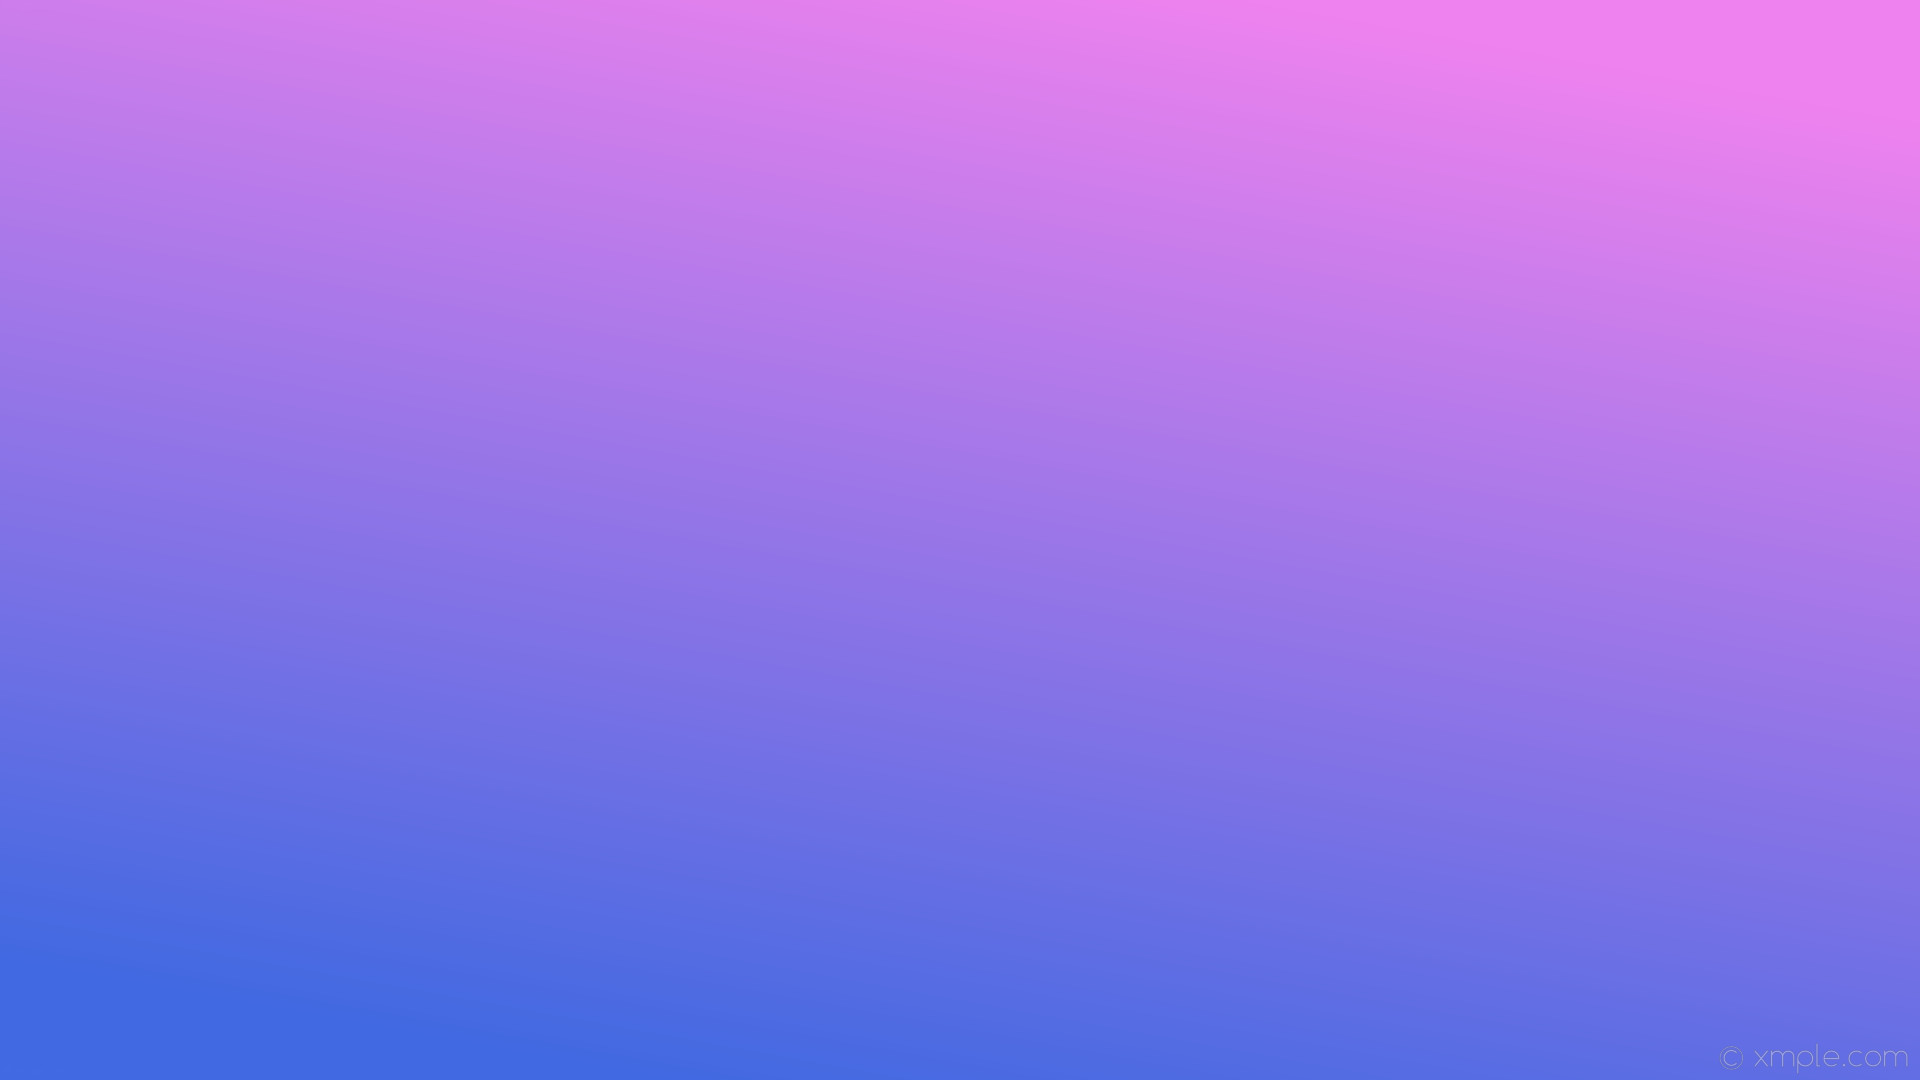 1920x1080 wallpaper purple linear blue gradient violet royal blue #ee82ee #4169e1 60Â°